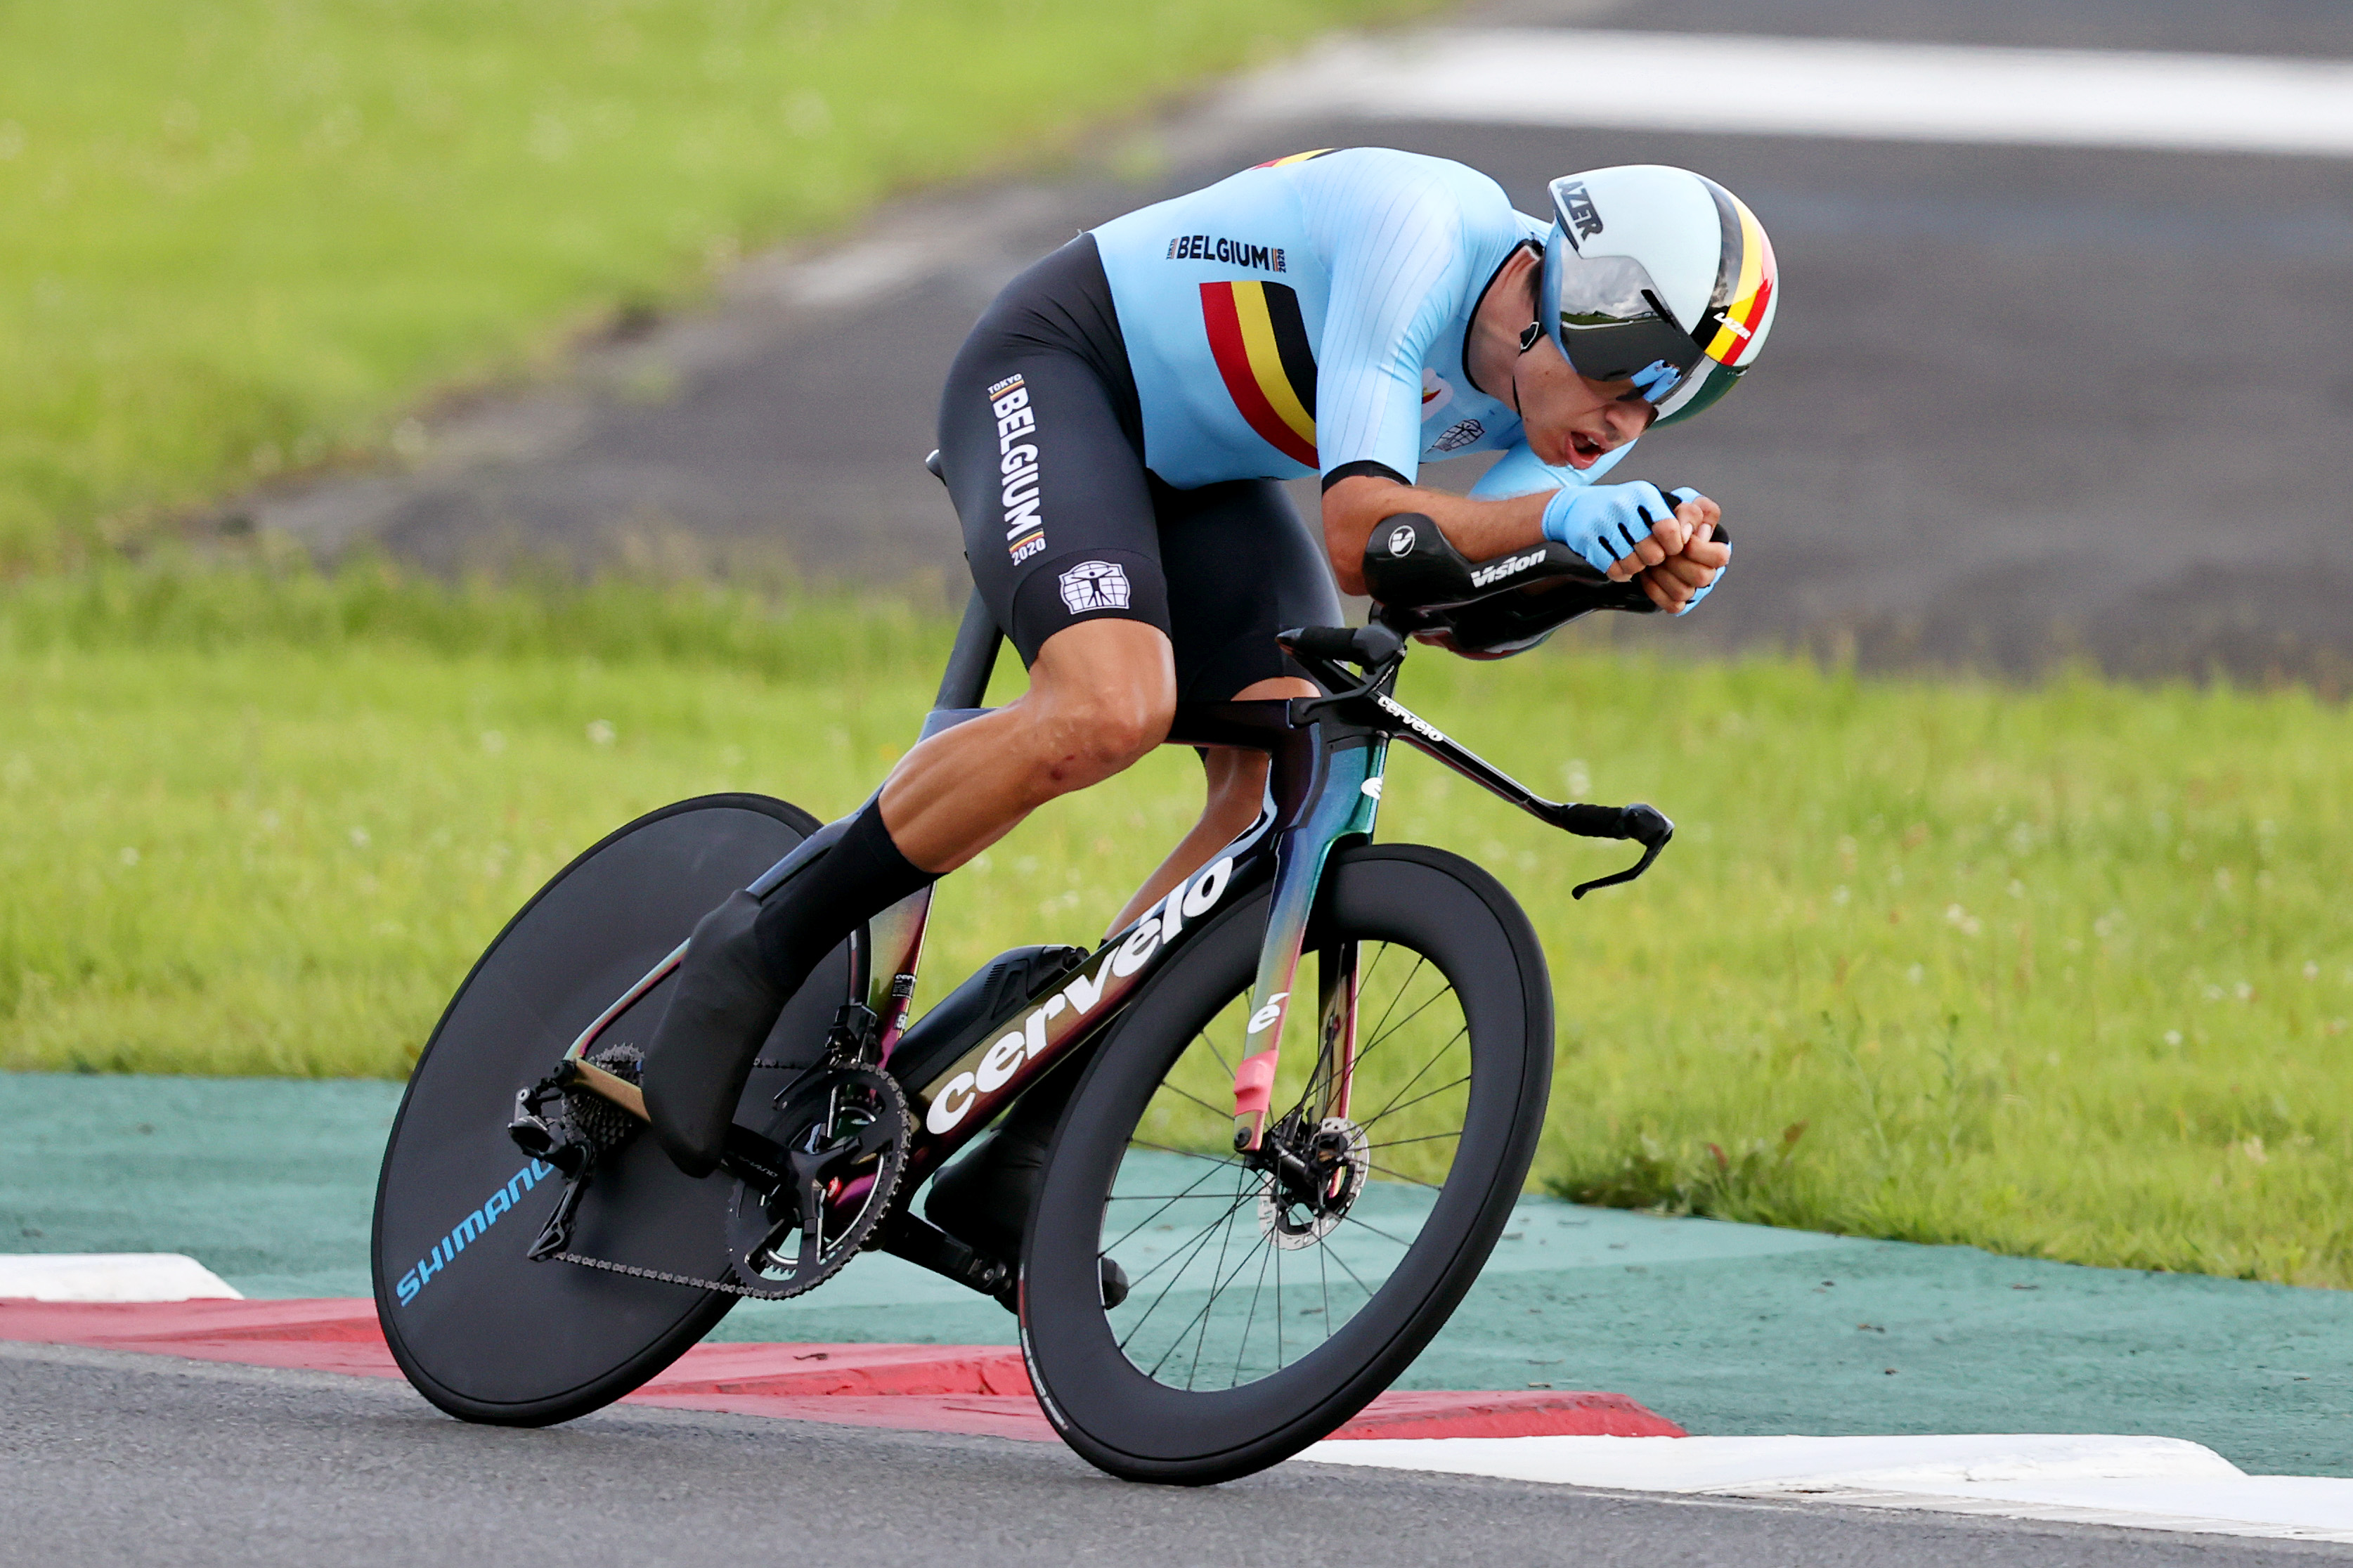 Vista previa de la carrera en ruta del Campeonato Mundial de Ruta UCI 2022, Cadel Evans van Aert Matthews Pogacar